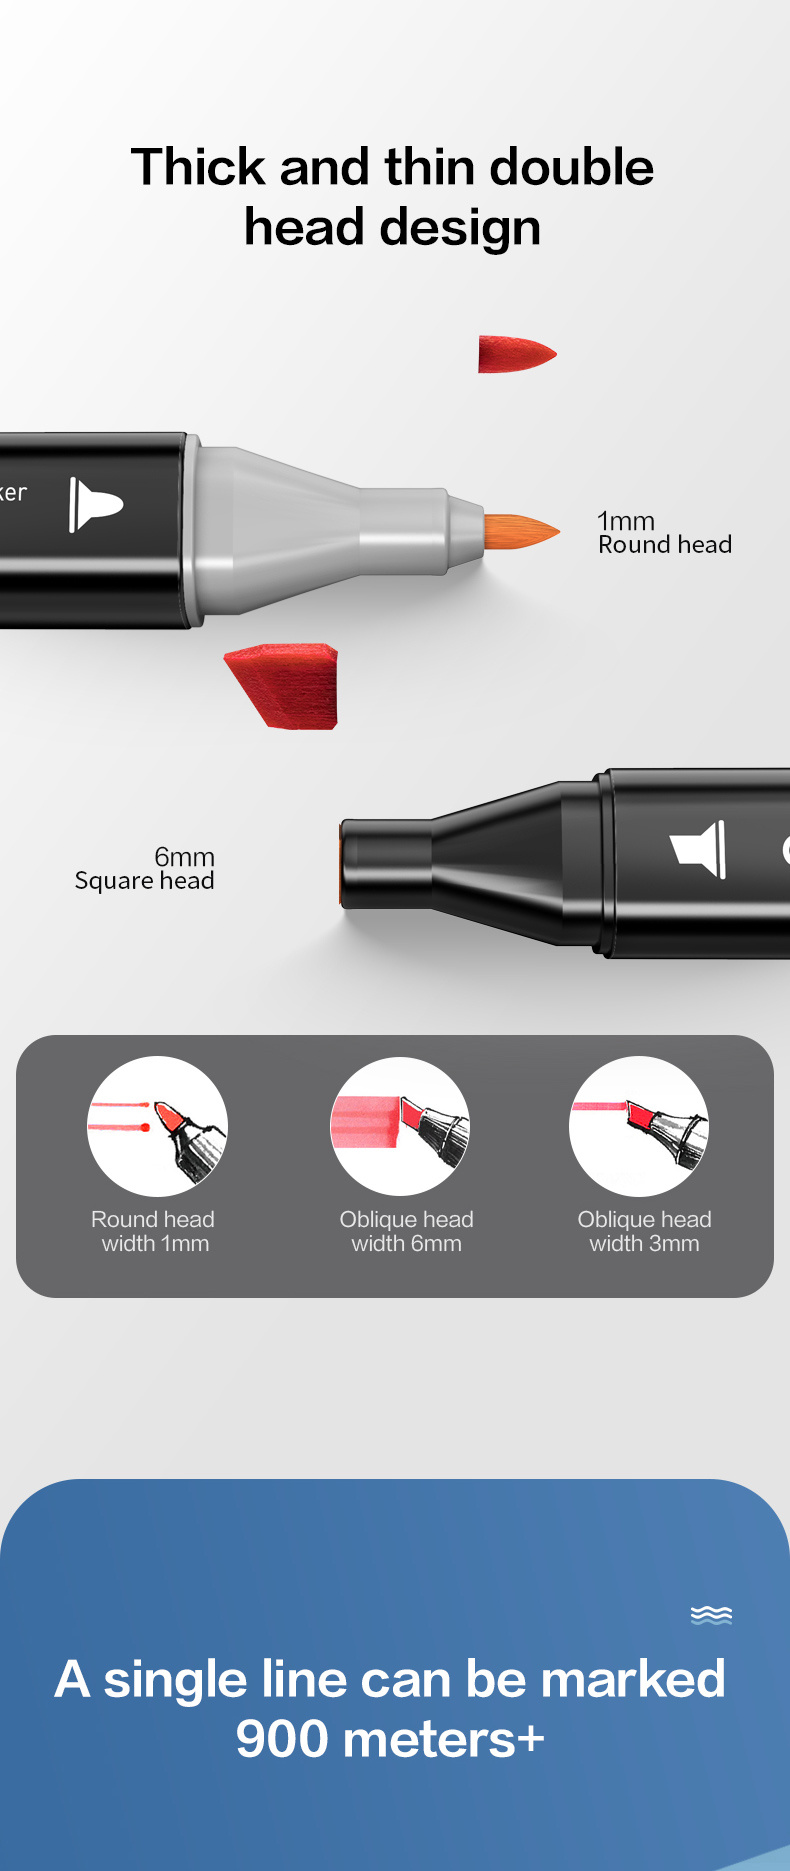 Deli Art Markers Set, 60 Colors Dual Tips Coloring Marker Pens